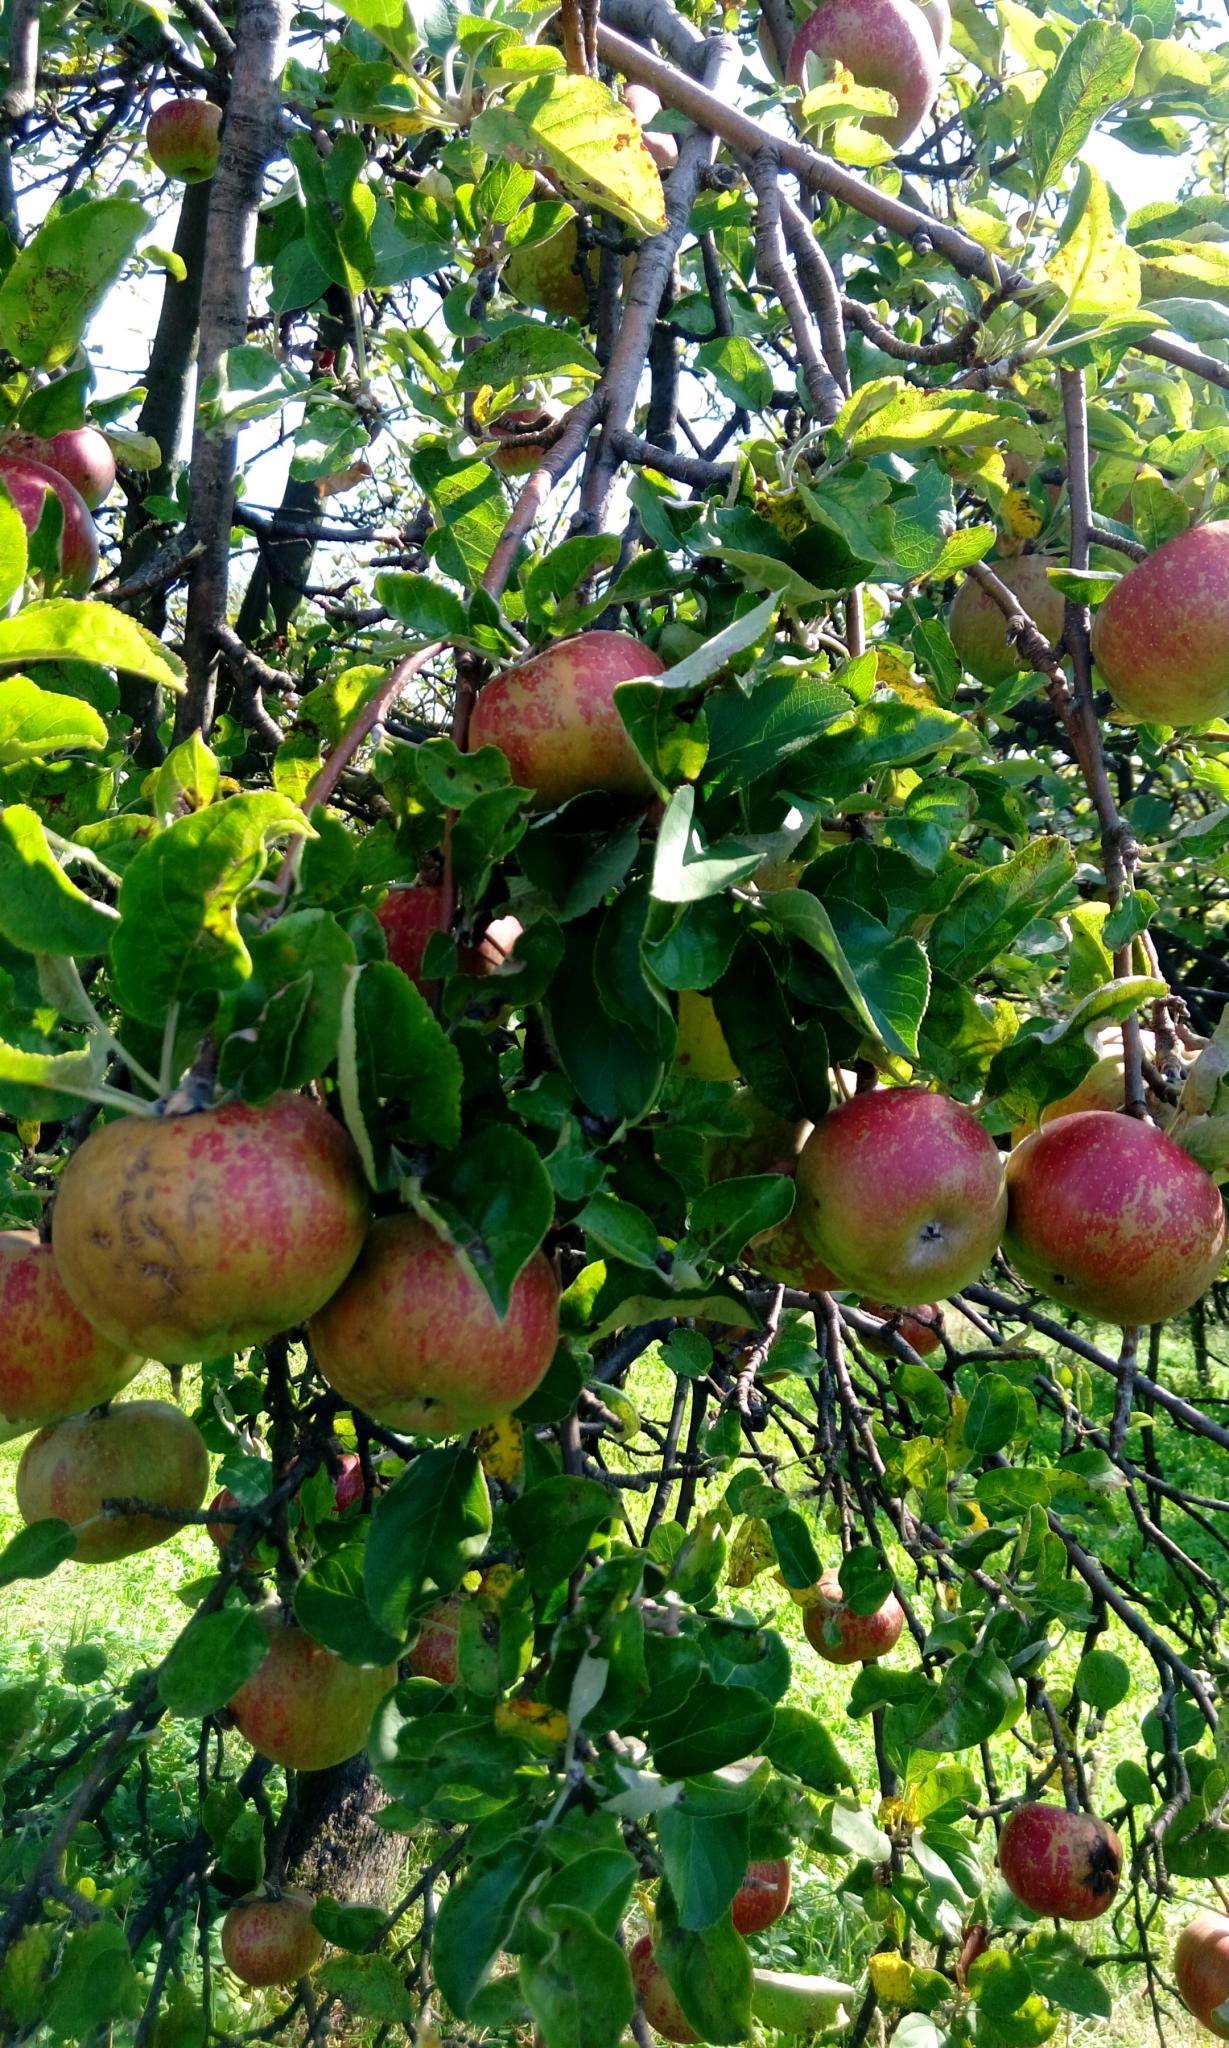 Dojrzałe jabłka na gałęzi jaļłoni w słoneczny dzień. Zdjęcie z Sadu cydrowni Smykan